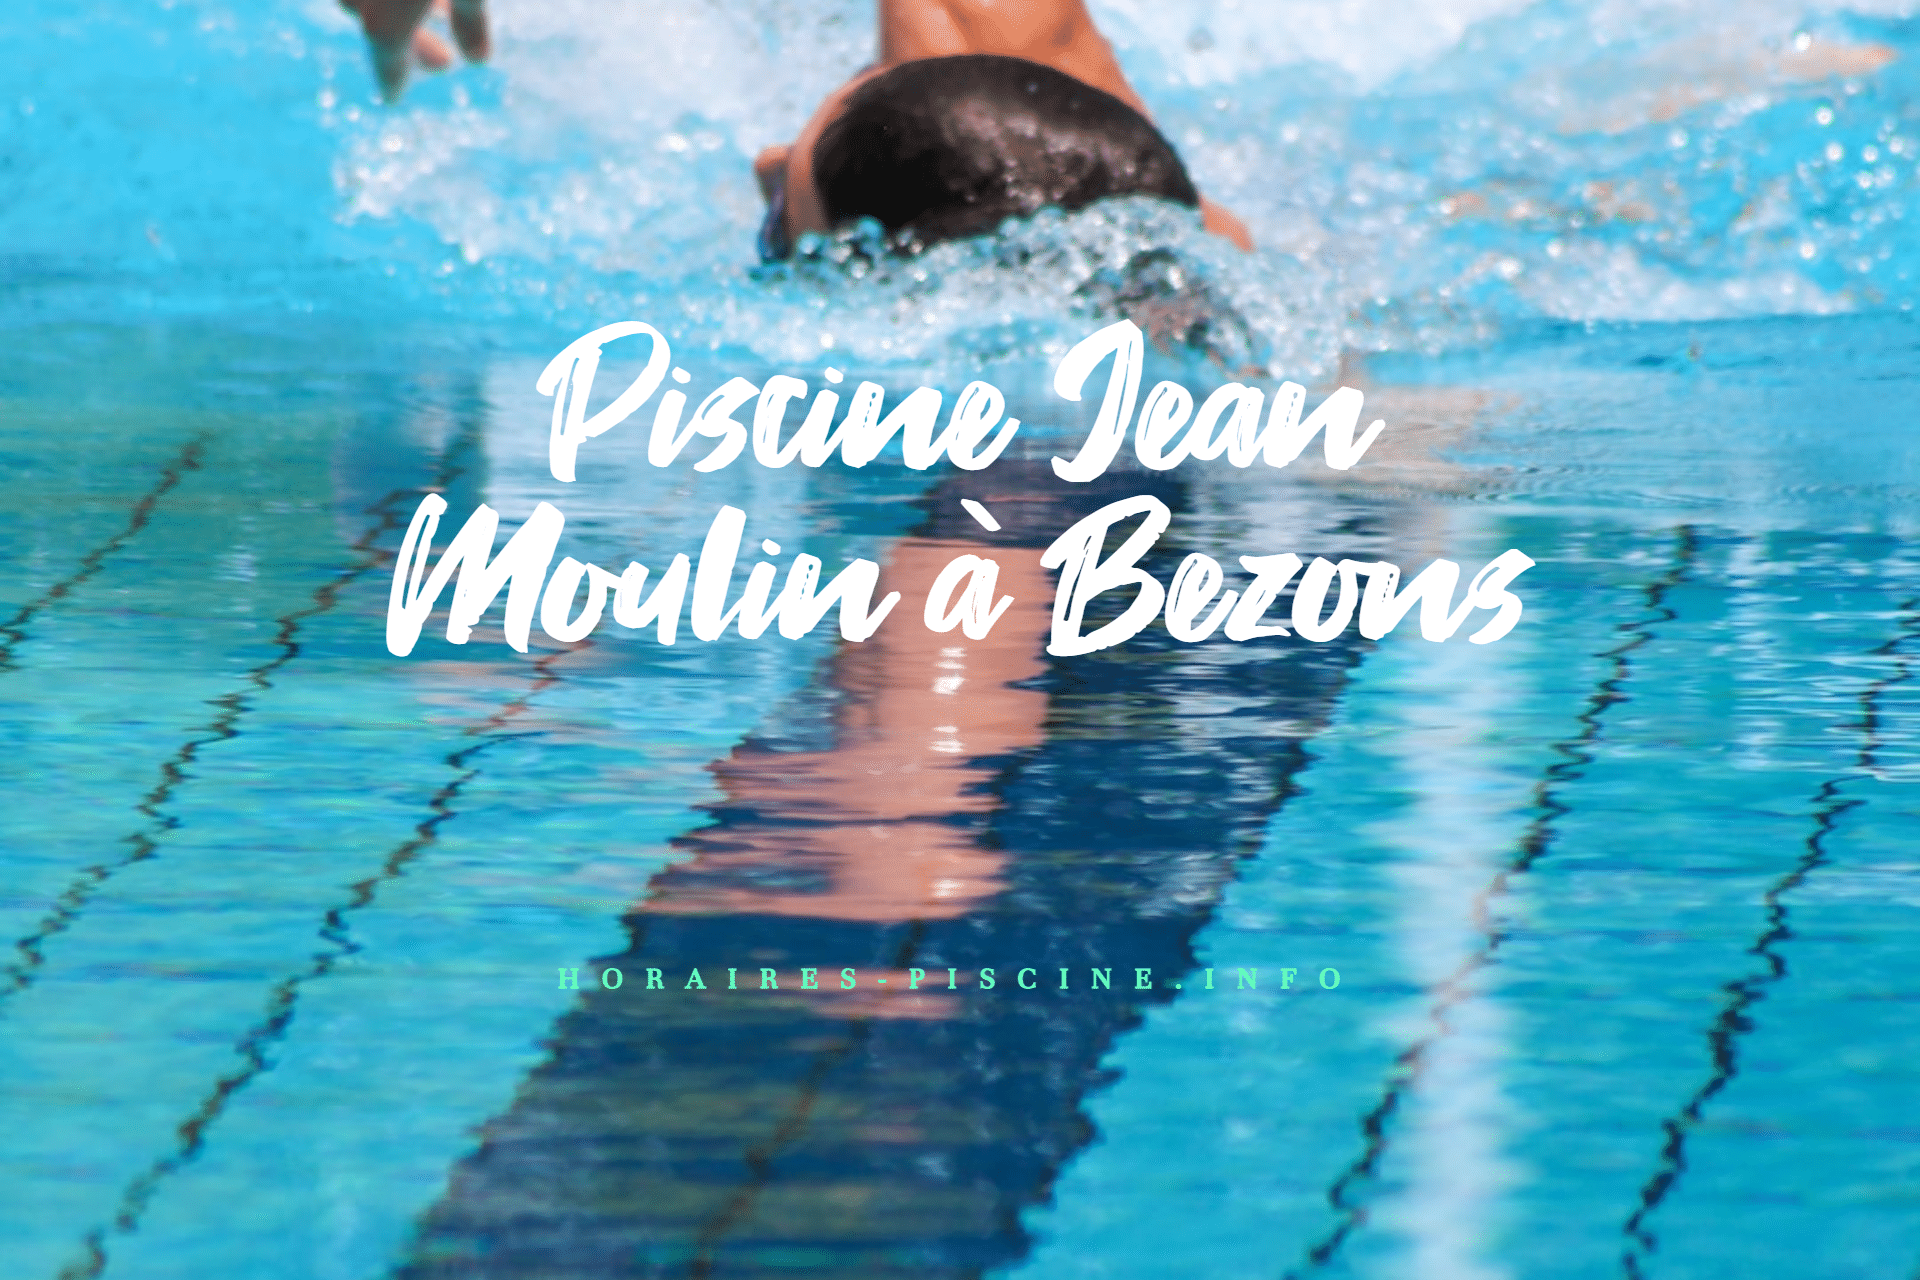 Piscine Jean Moulin à Bezons